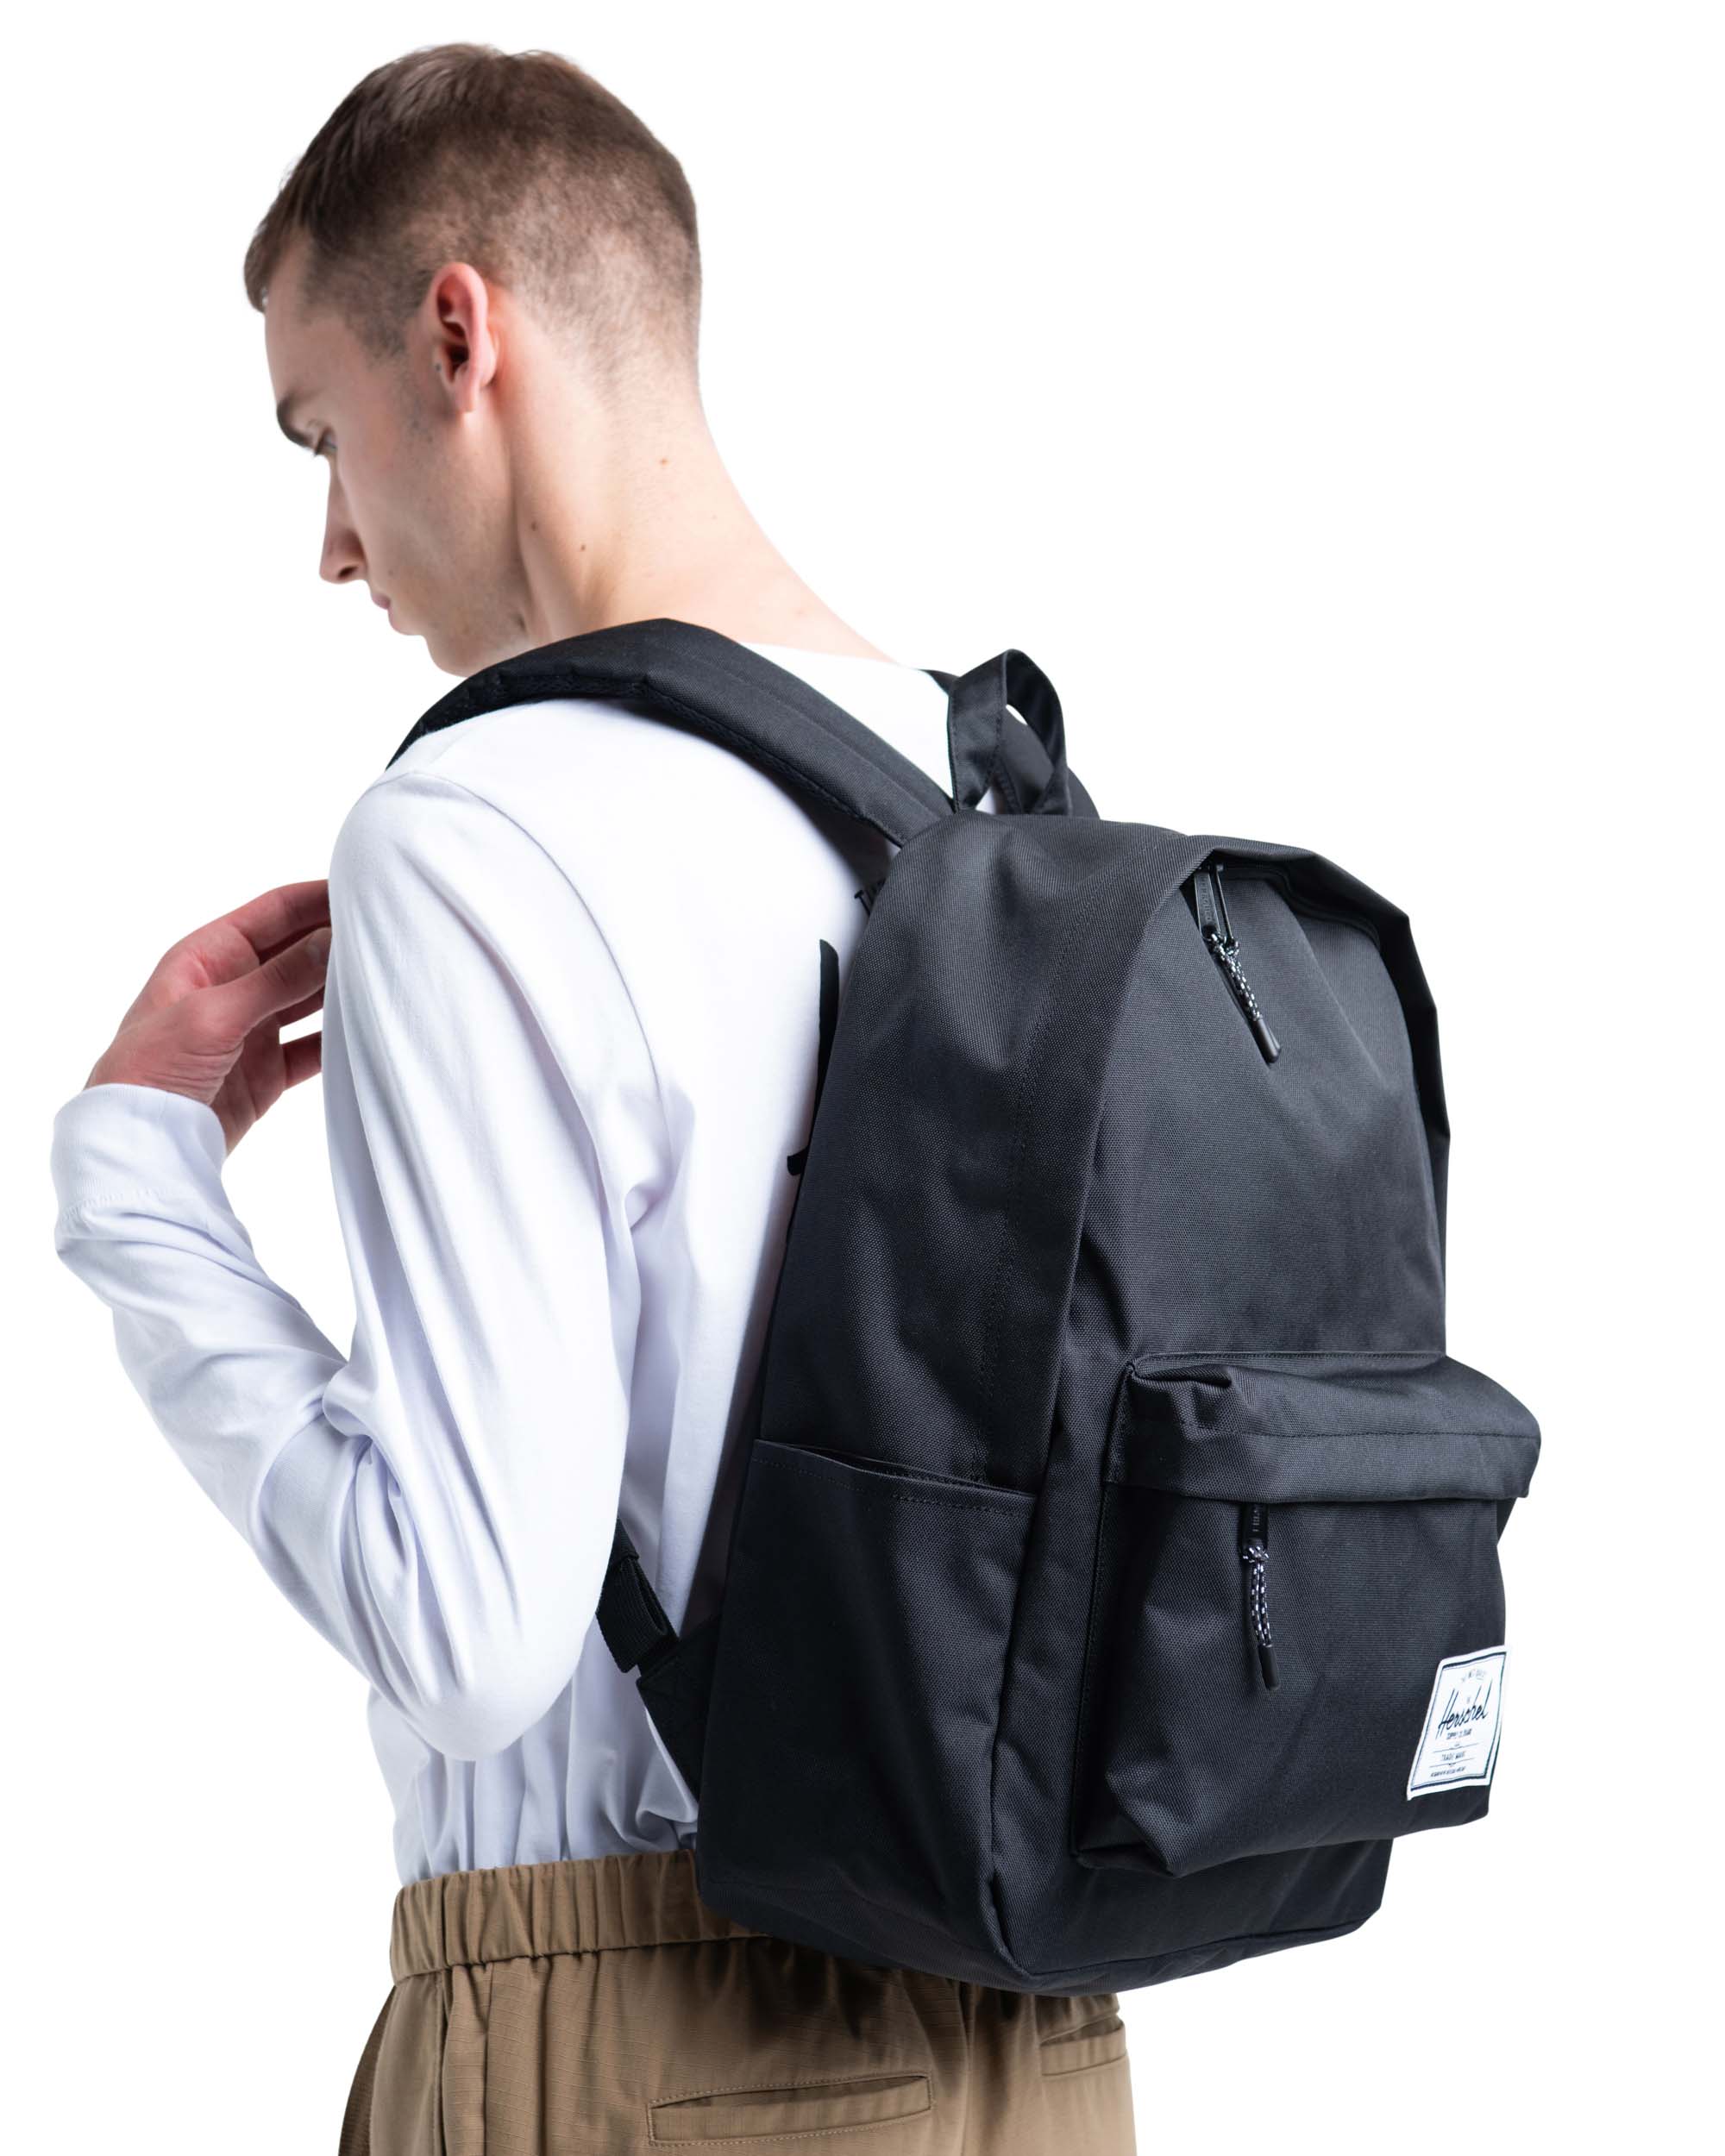 herschel original backpack